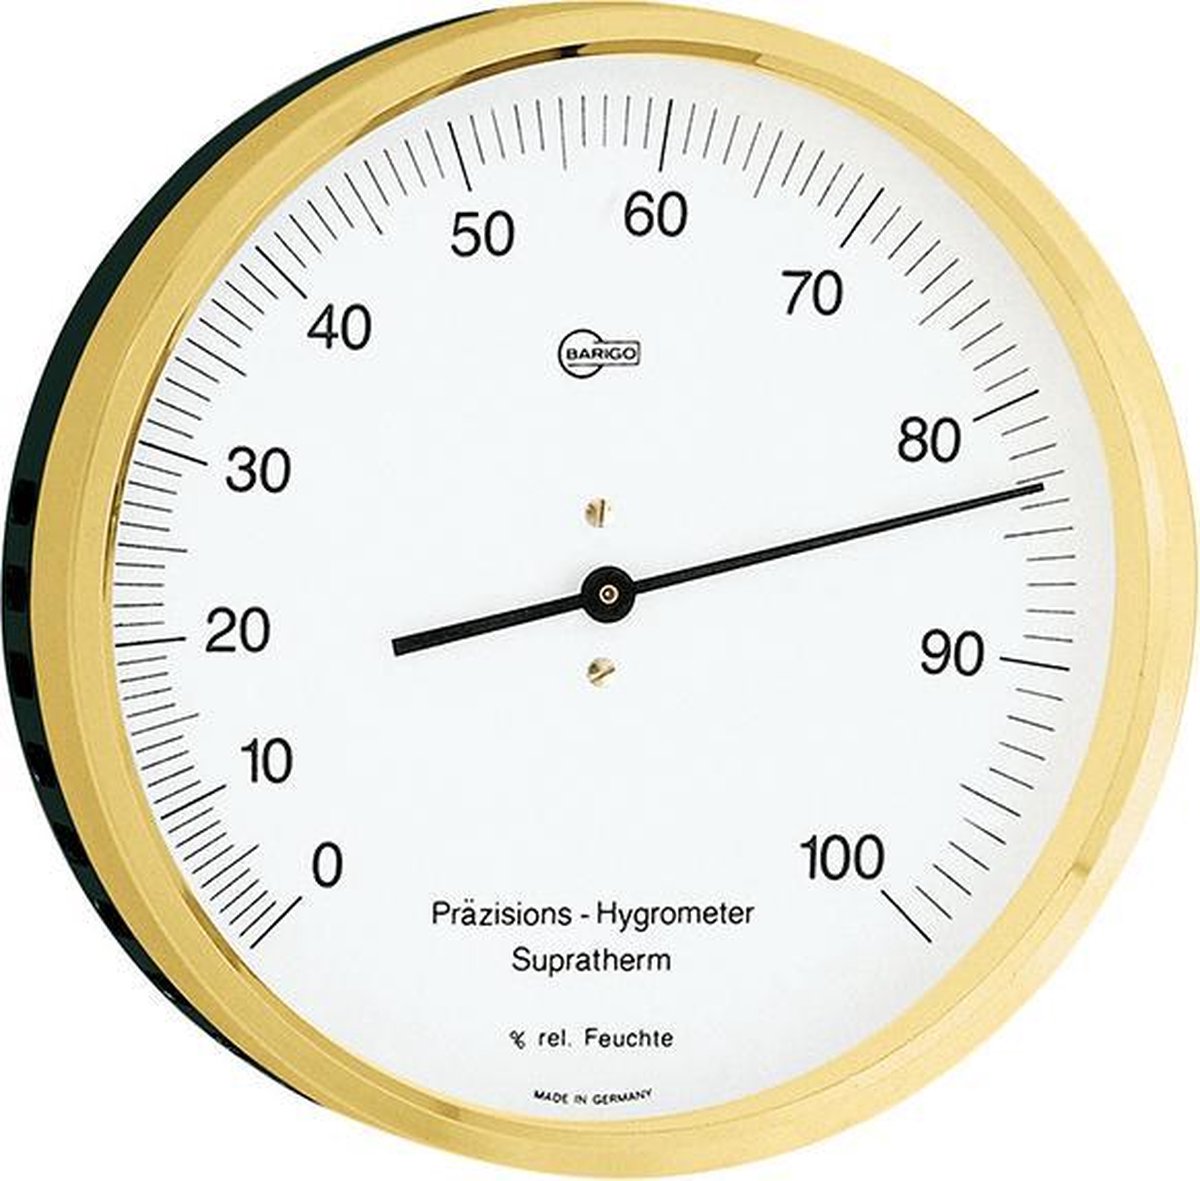 Barigo 420MS - messing - precisie hygrometer - analoog - Ø 10 cm